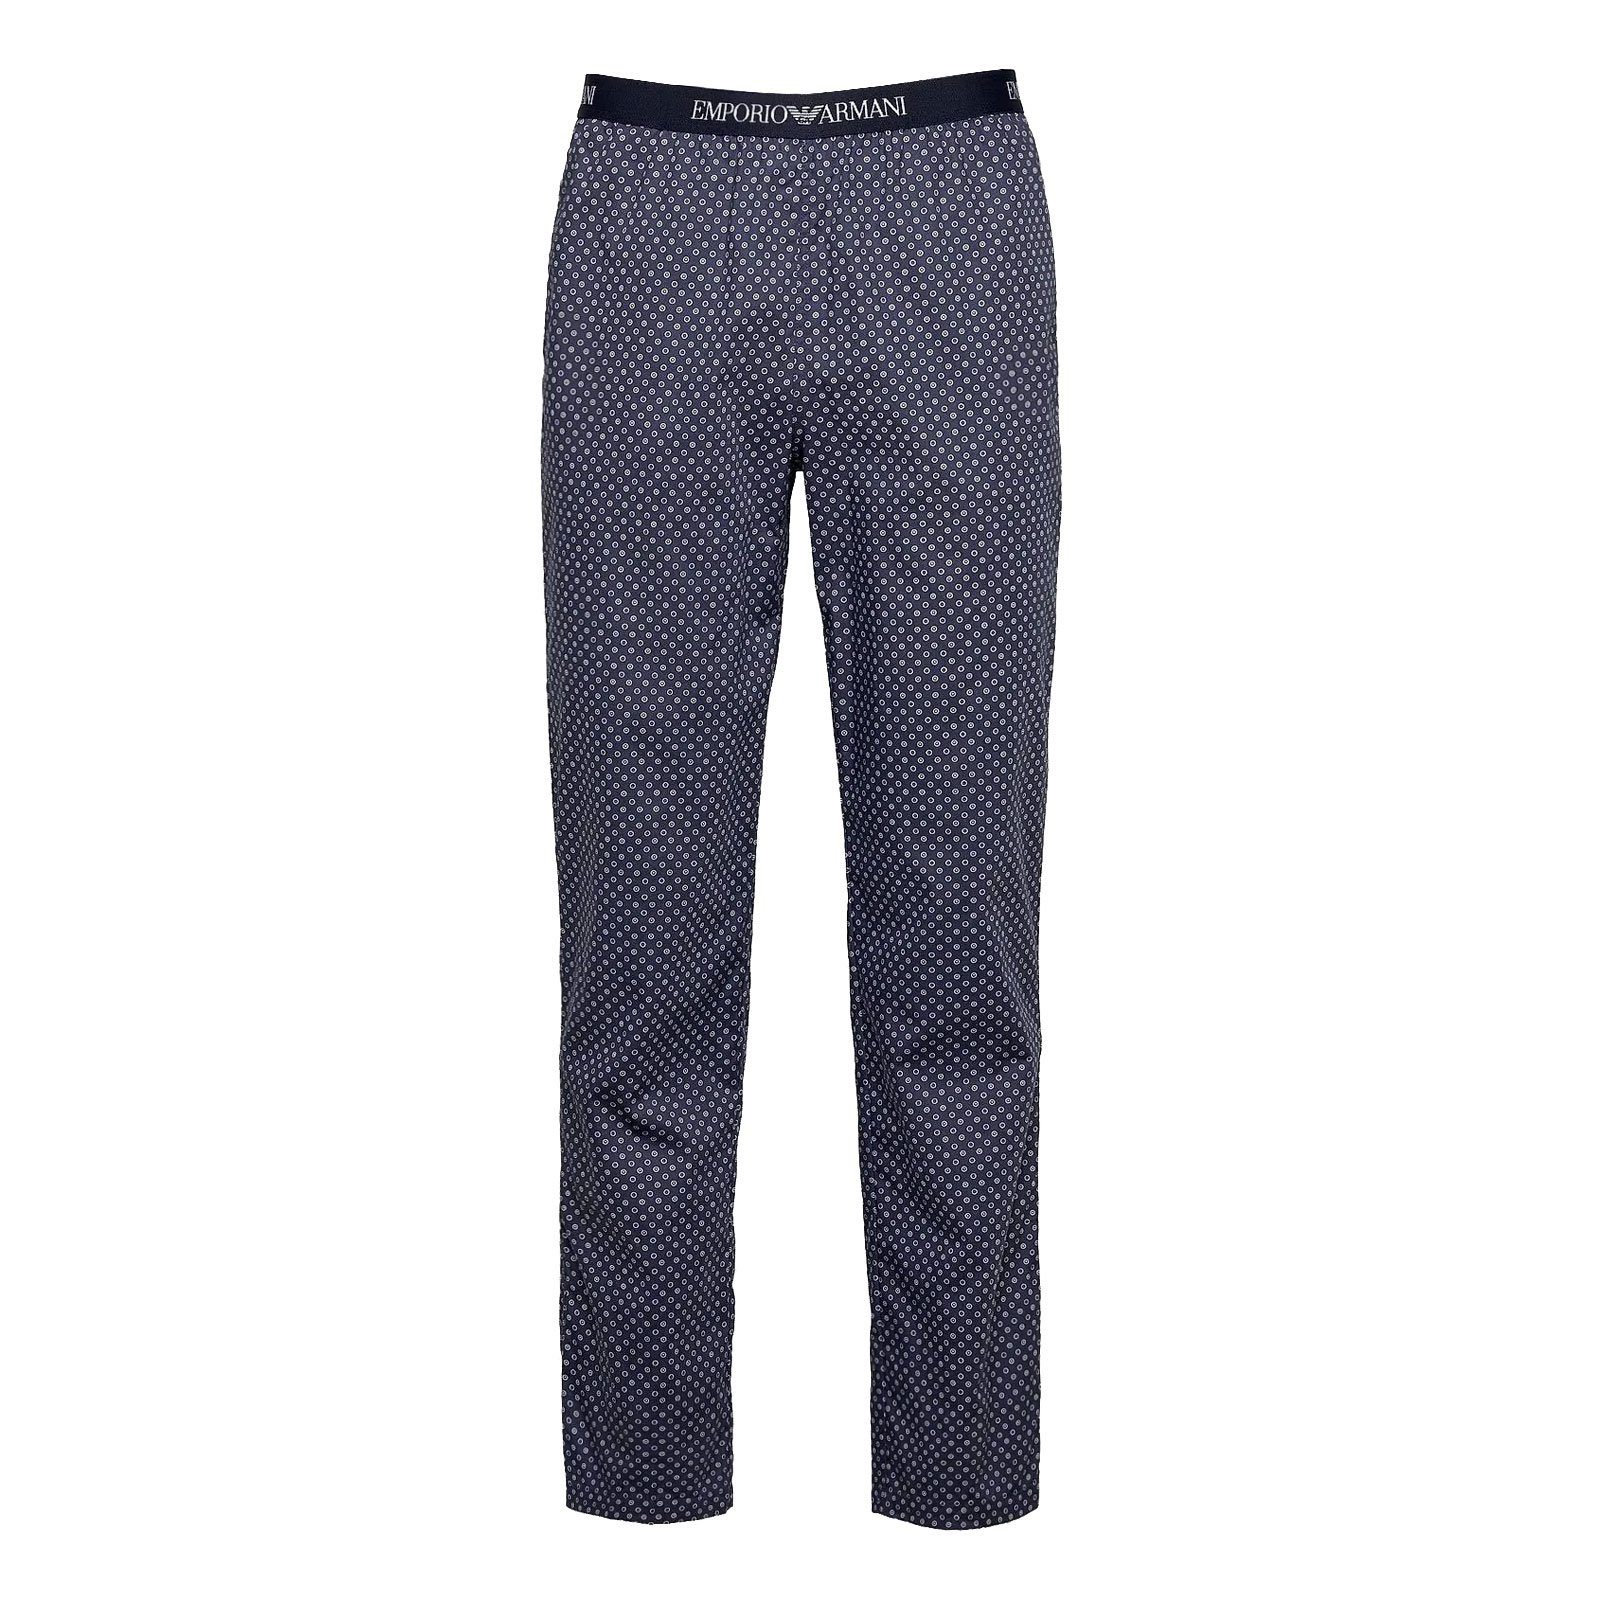 Emporio Armani Pyjamahose Loungewear Schlafhose mit umlaufendem Markenschriftzug auf Komfortbund 90335 marine / white circles